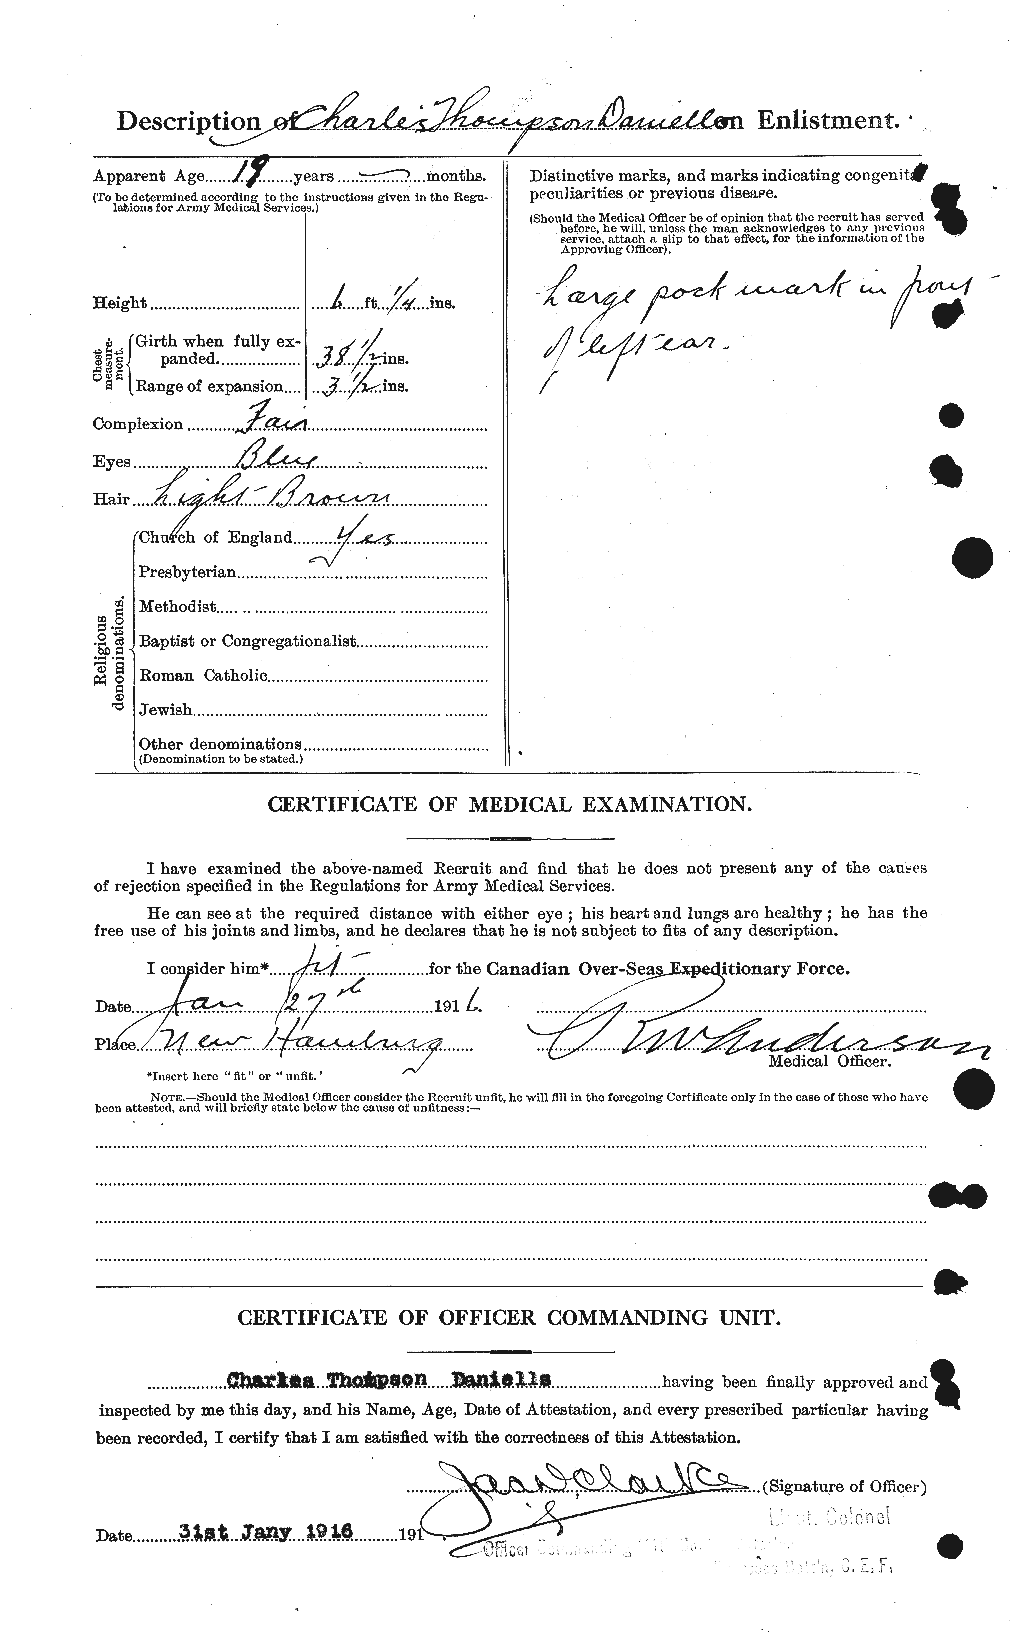 Dossiers du Personnel de la Première Guerre mondiale - CEC 279554b